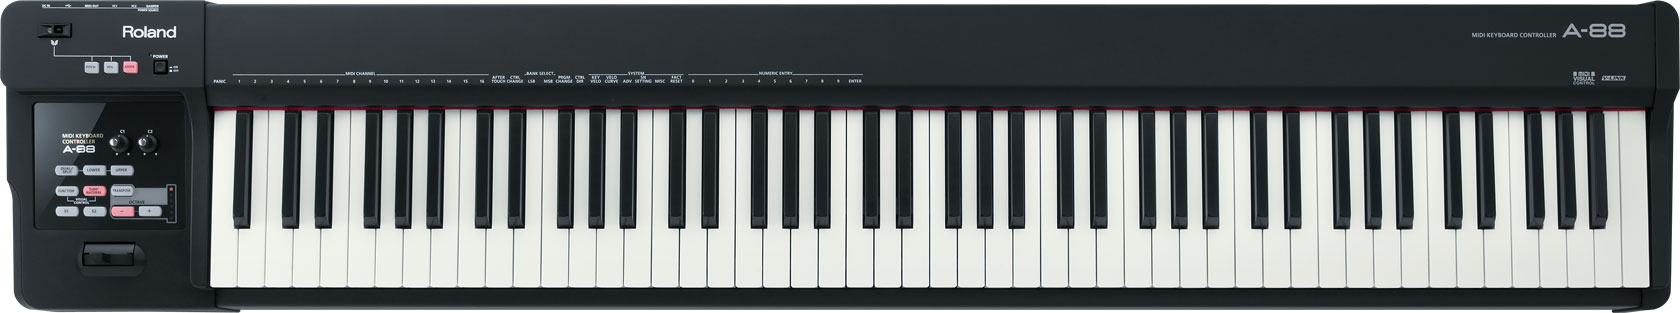 罗兰 Roland A-88 MIDI键盘控制器